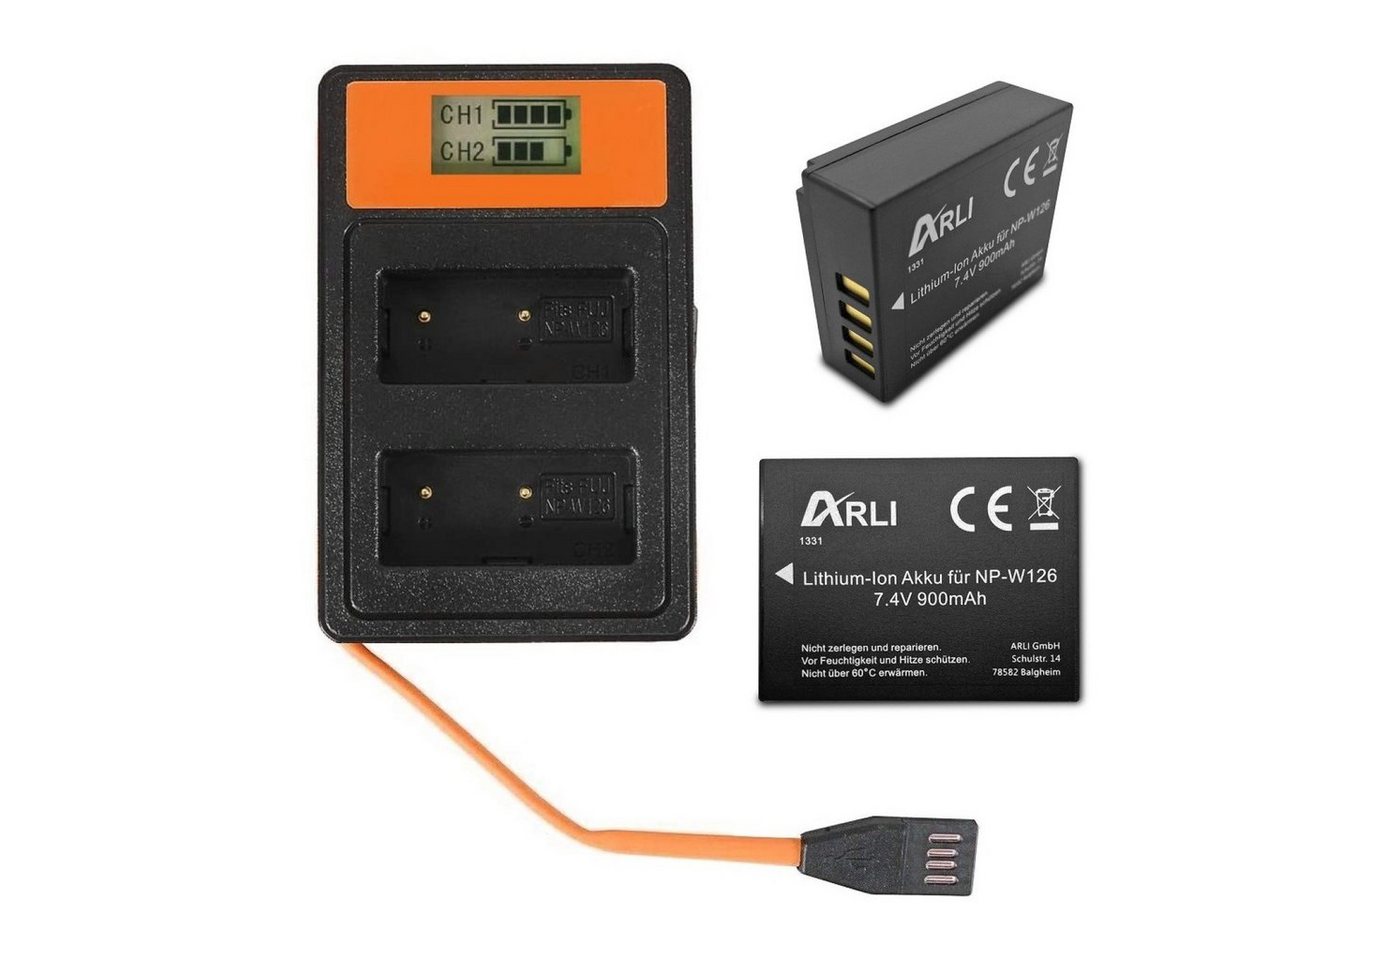 ARLI 2x Akku für Fuji NP-W126S NPW-126 + Smart Dual LCD USB Ladegerät Akku, 100% kompatibel passend Ersatzakku von ARLI